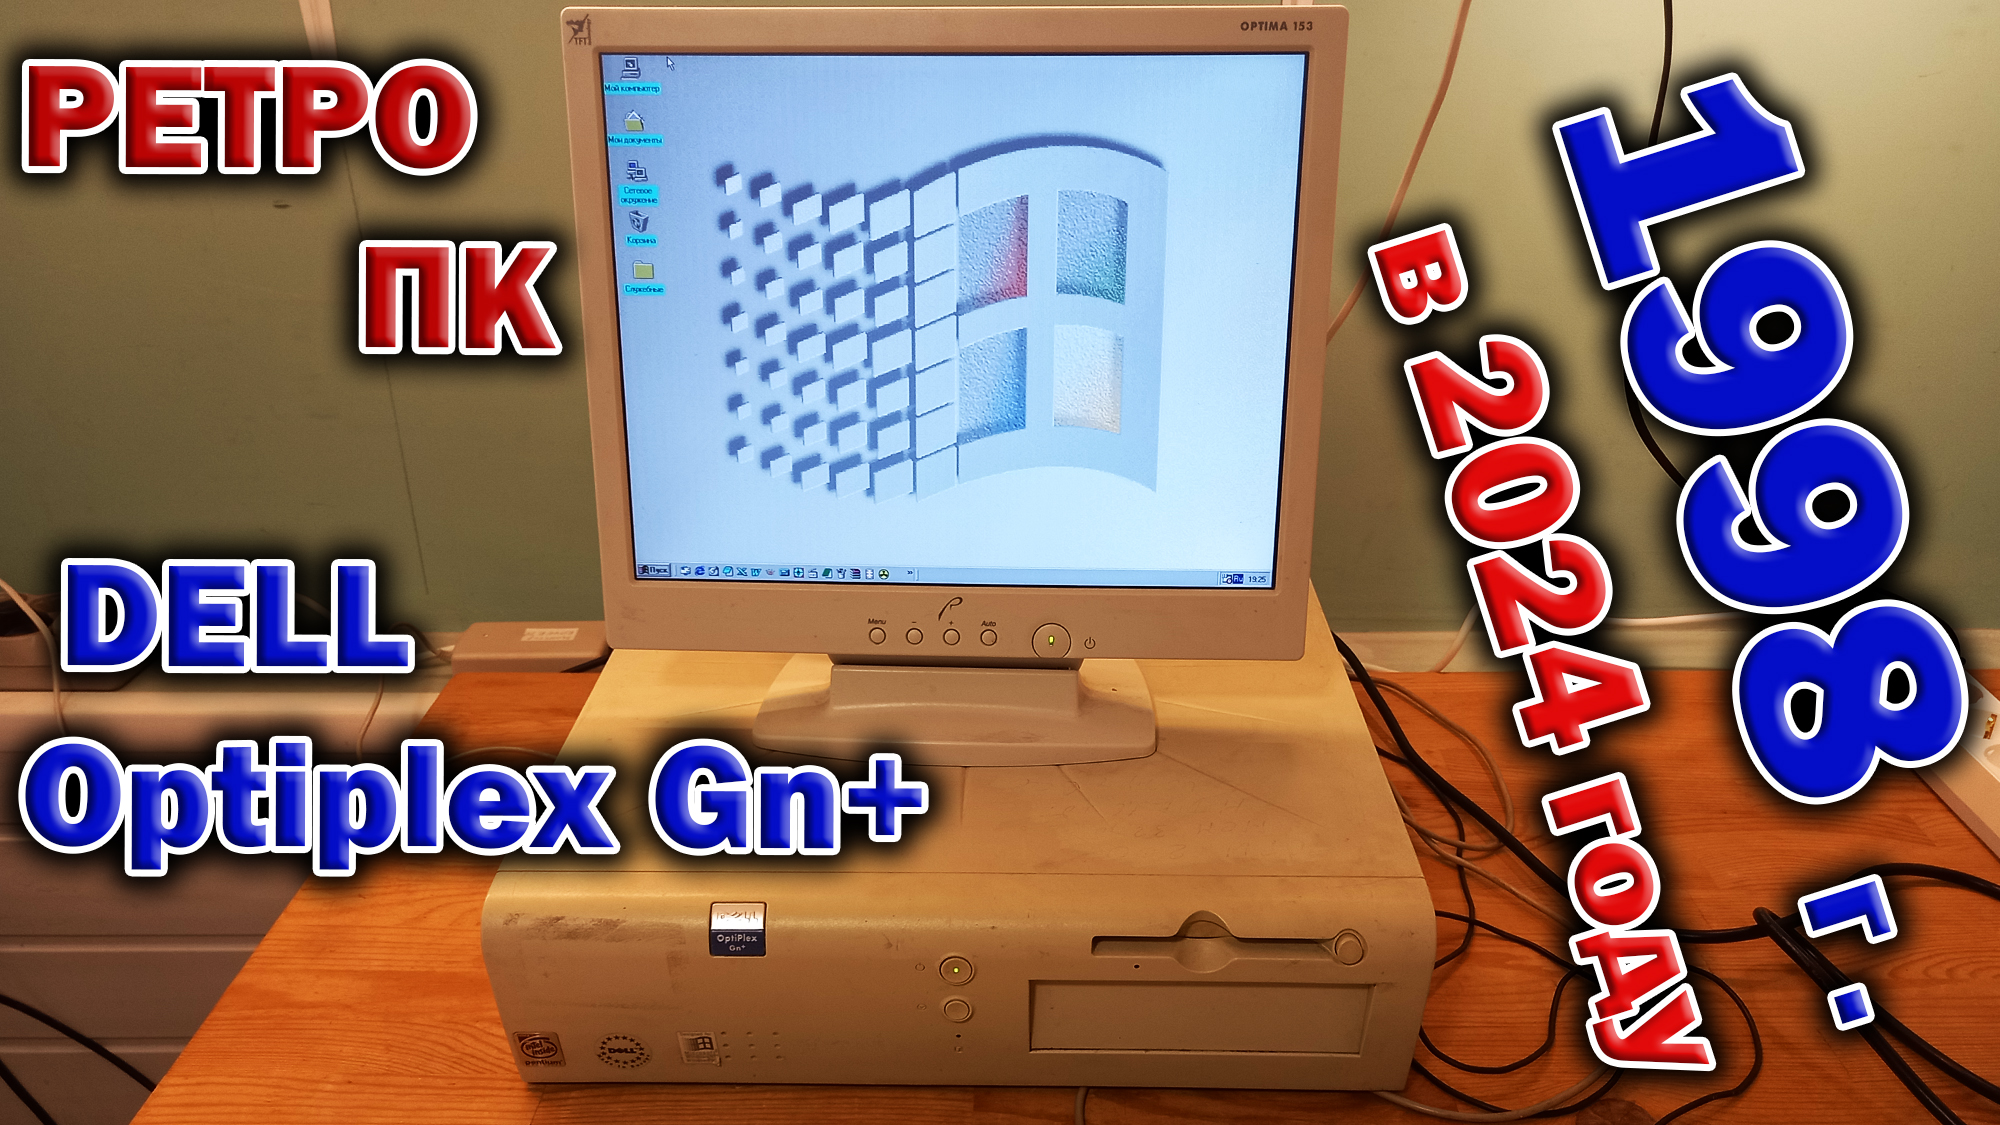 Фирменный ретро ПК 1998 года - Dell Optiplex Gn+. Первое знакомство и разборка. Попробуем включить!